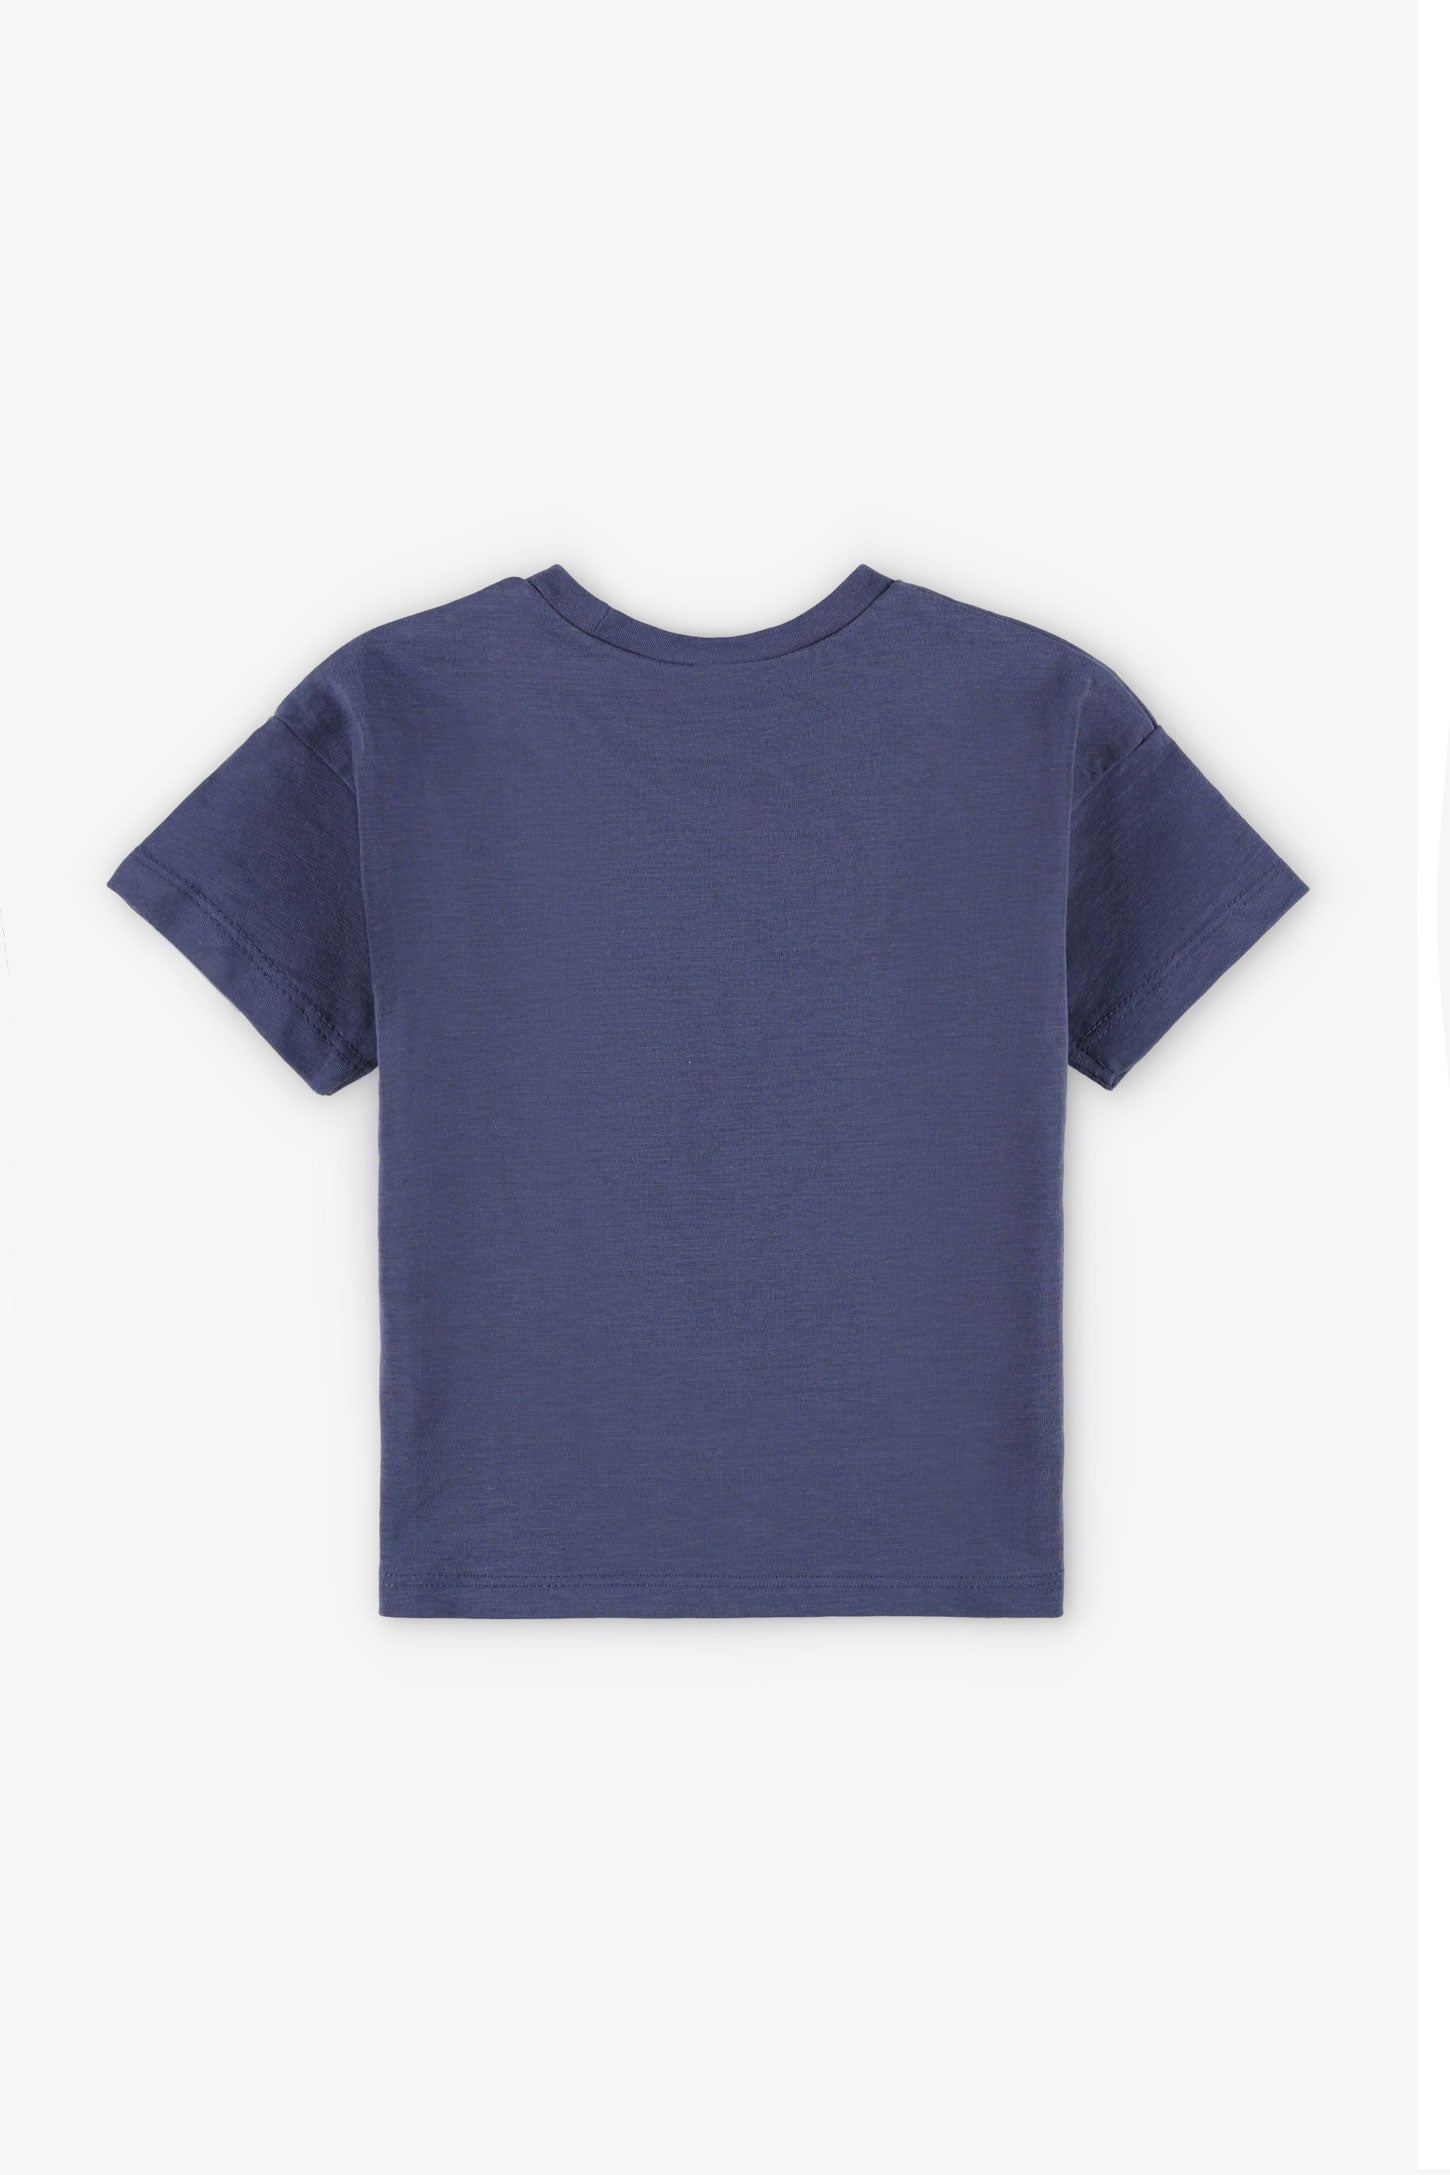 T-shirt coupe ample en coton, 2/15$ - Bébé garçon && BLEU MARINE